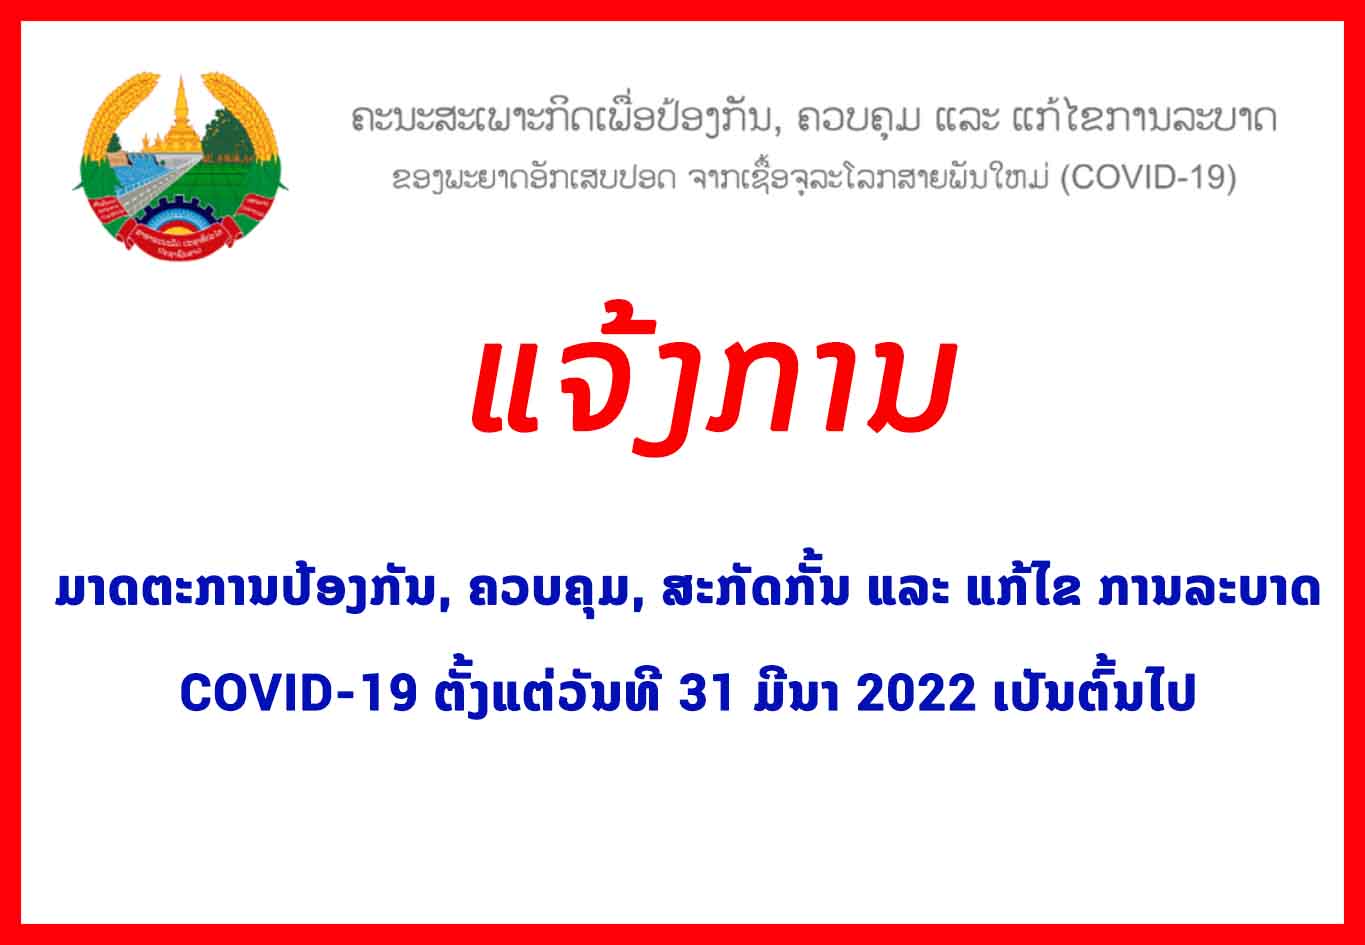 ມາດຕະການປ້ອງກັນ, ຄວບຄຸມ, ສະກັດກັ້ນ ແລະ ແກ້ໄຂ ການລະບາດ COVID-19 ຕັ້ງແຕ່ວັນທີ 31 ມີນາ 2022 ເປັນຕົ້ນໄປ